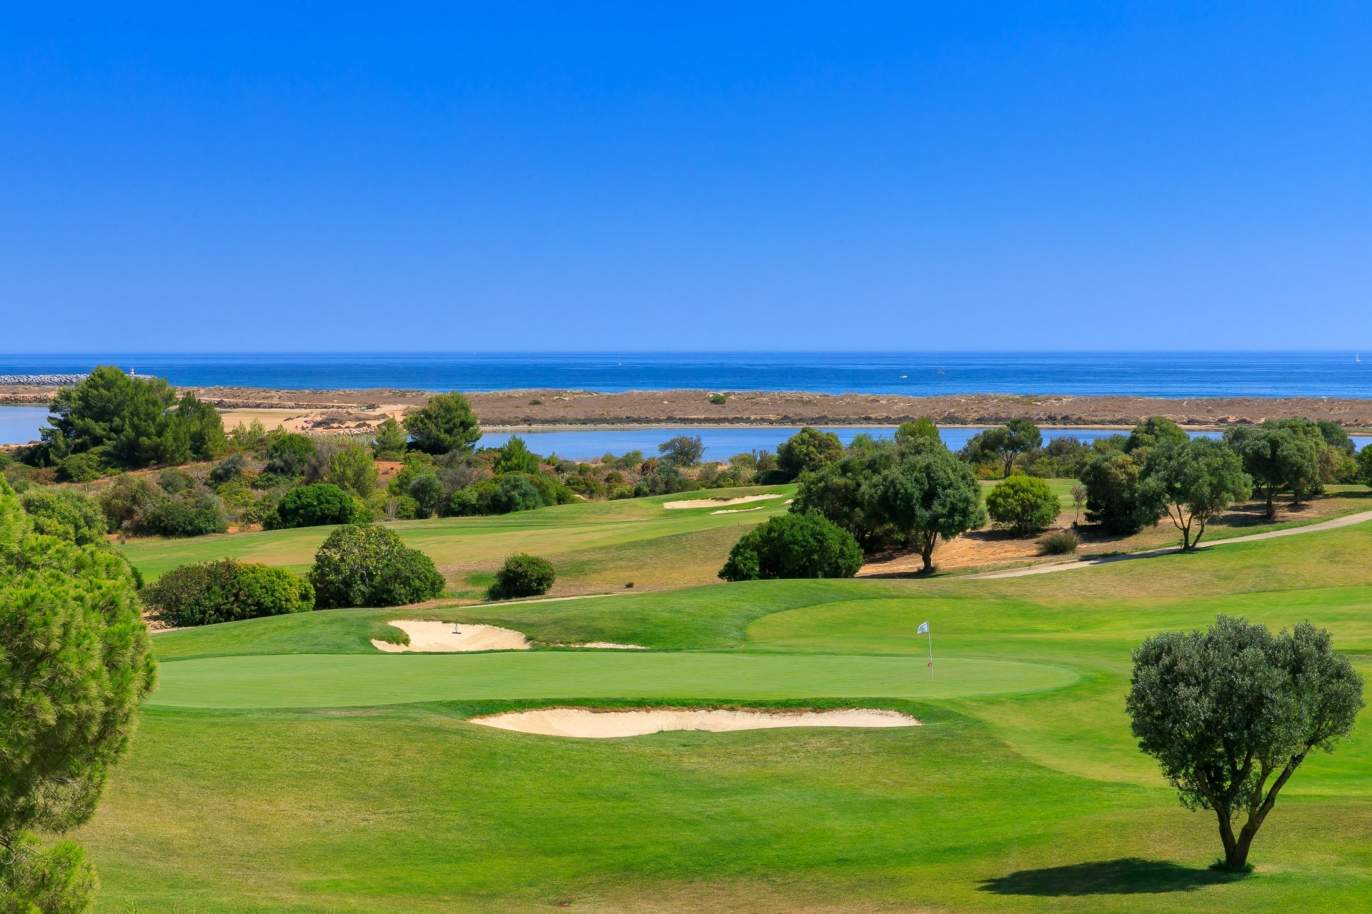 Terrain à vendre dans un complexe de golf, Lagos, Algarve, Portugal_122998